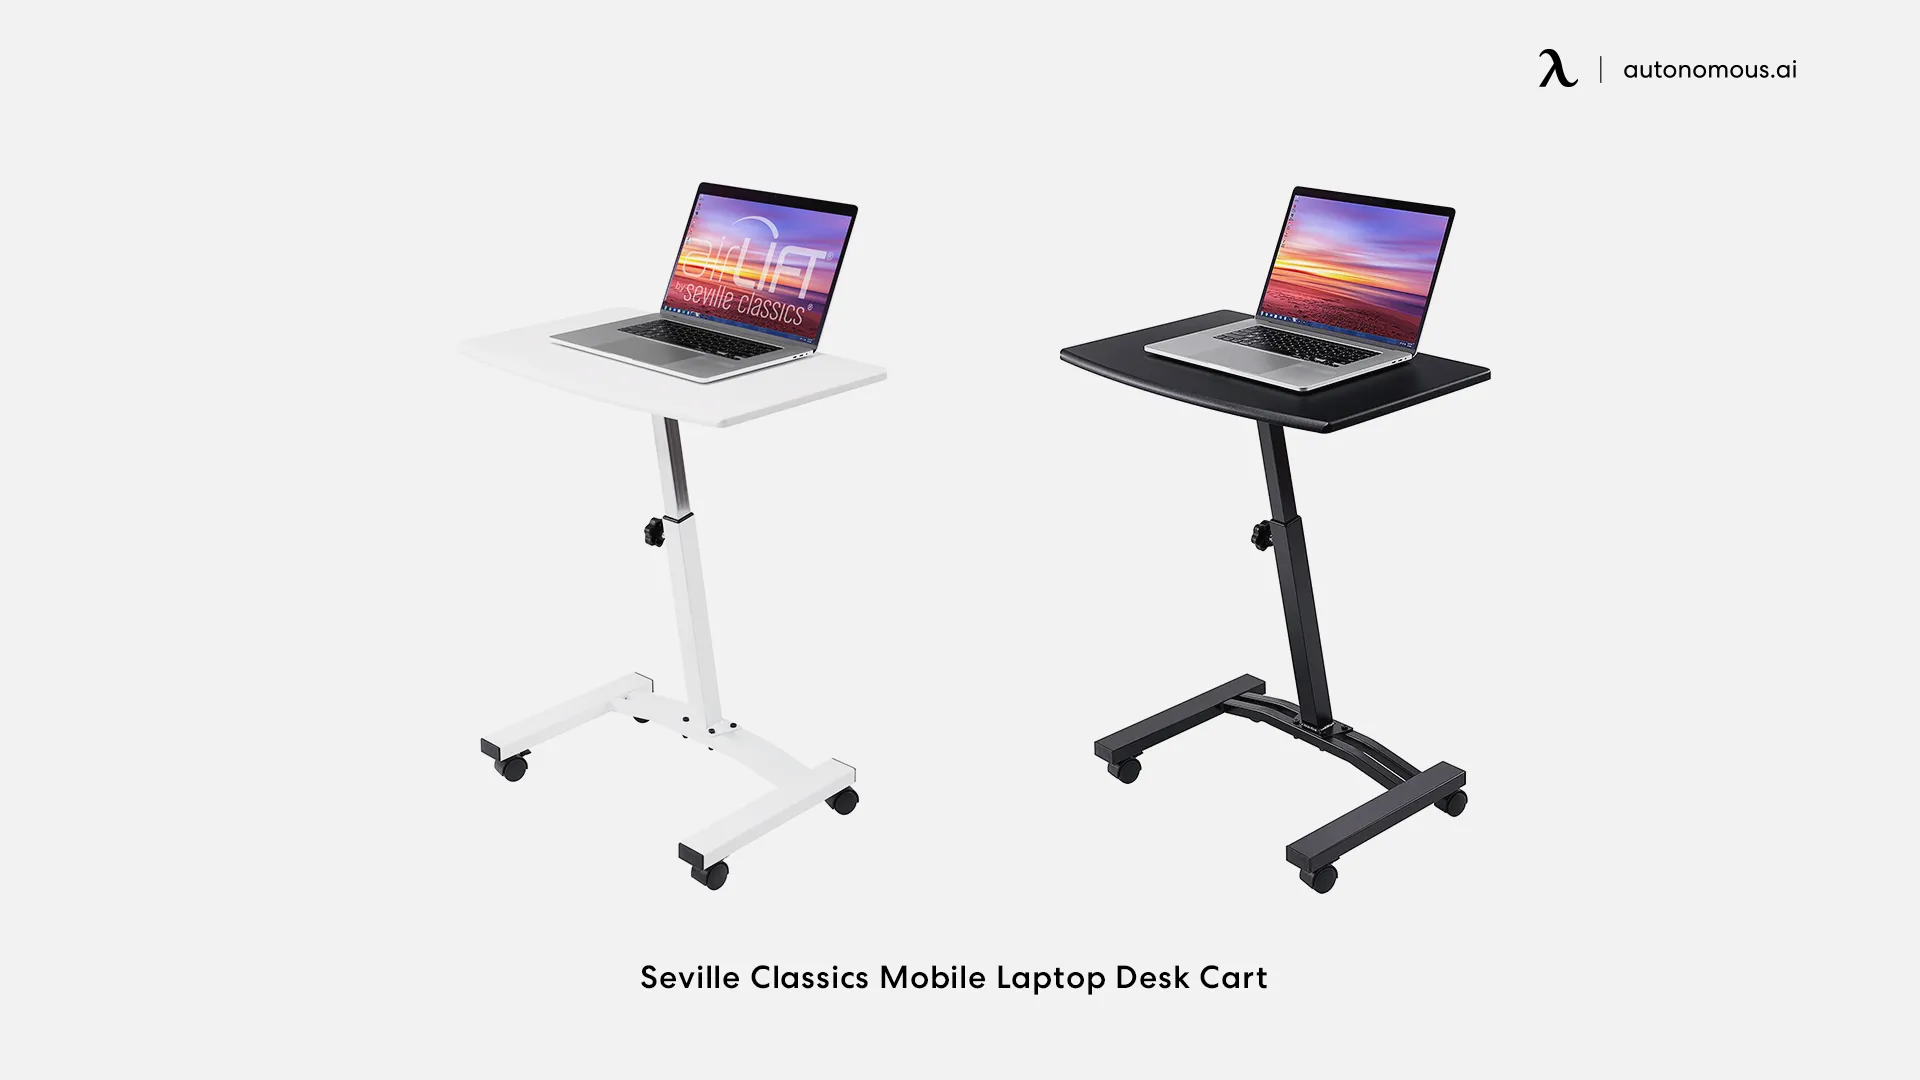 Seville Classics Mobile Laptop Desk Cart